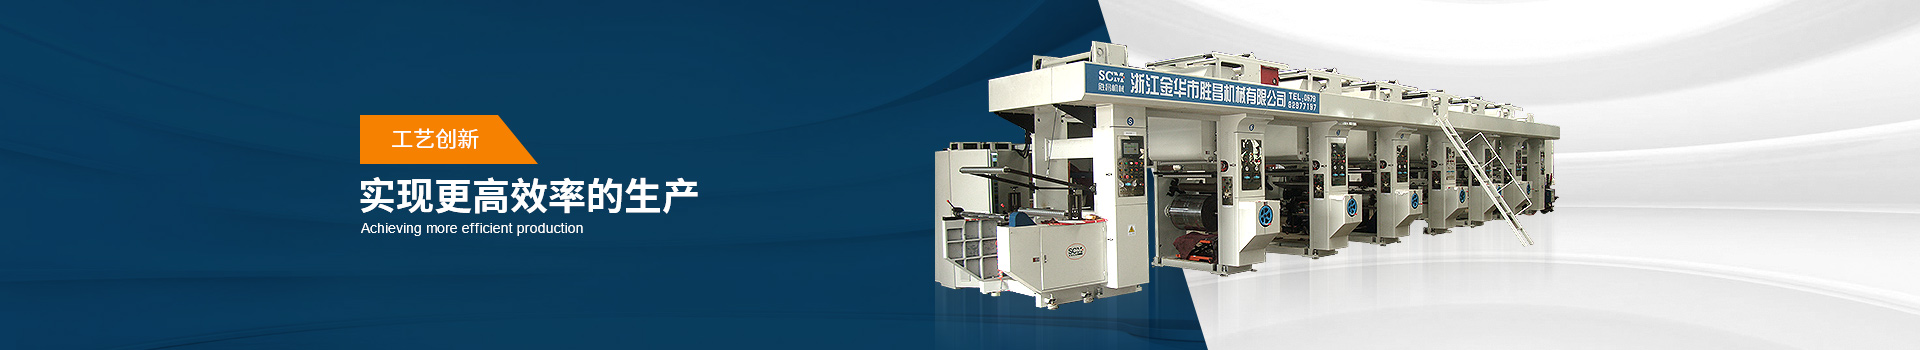 凹版印刷机  工艺创新   实现更高效率的生产